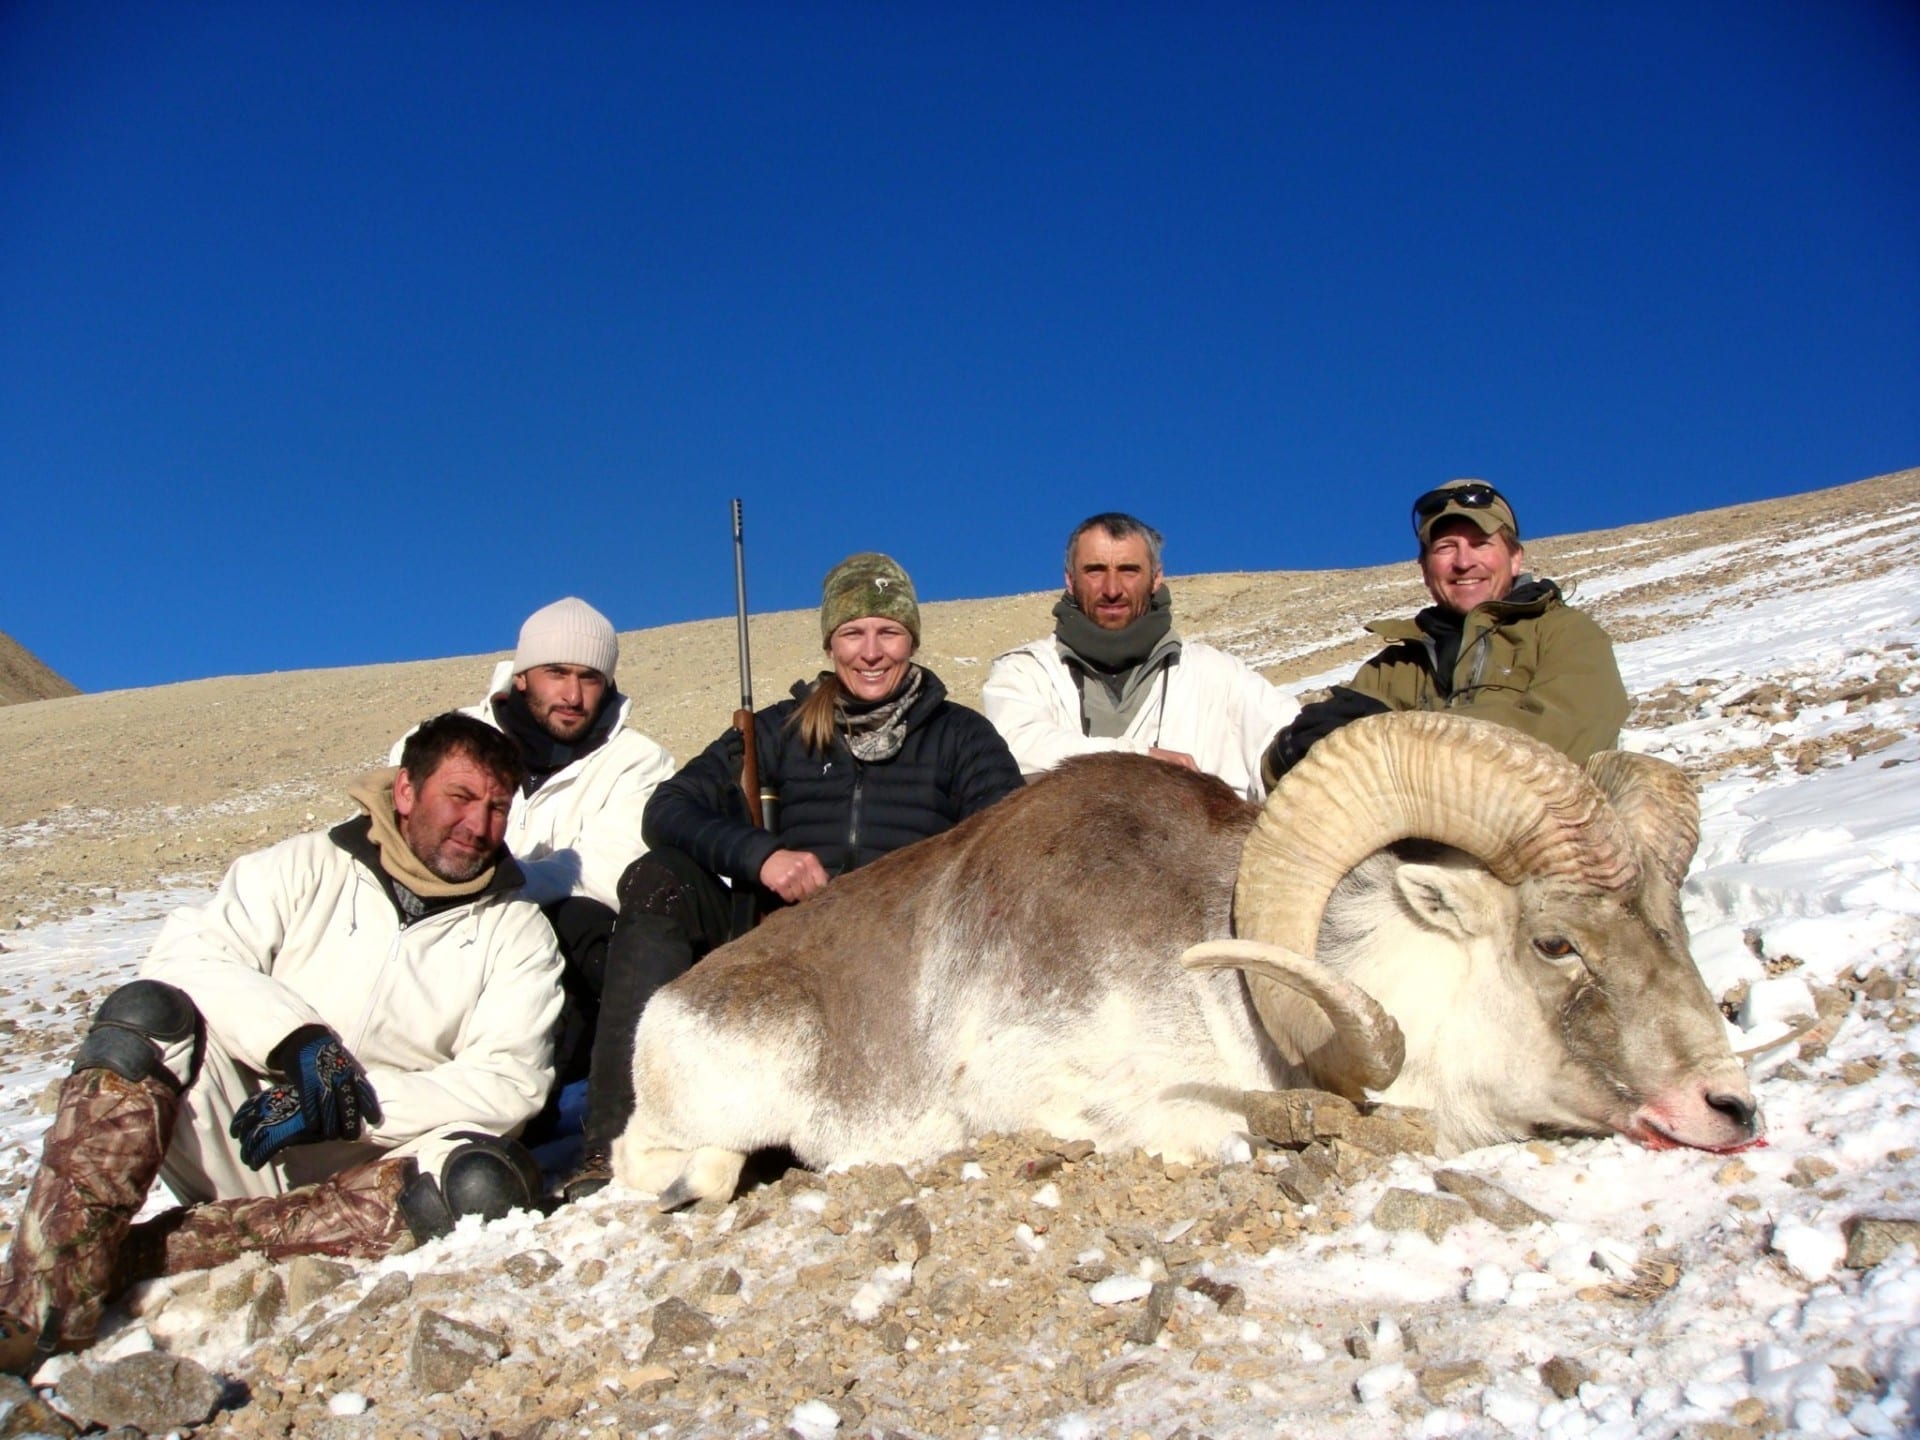 Marco Polo sheep hunting in Tajikistan